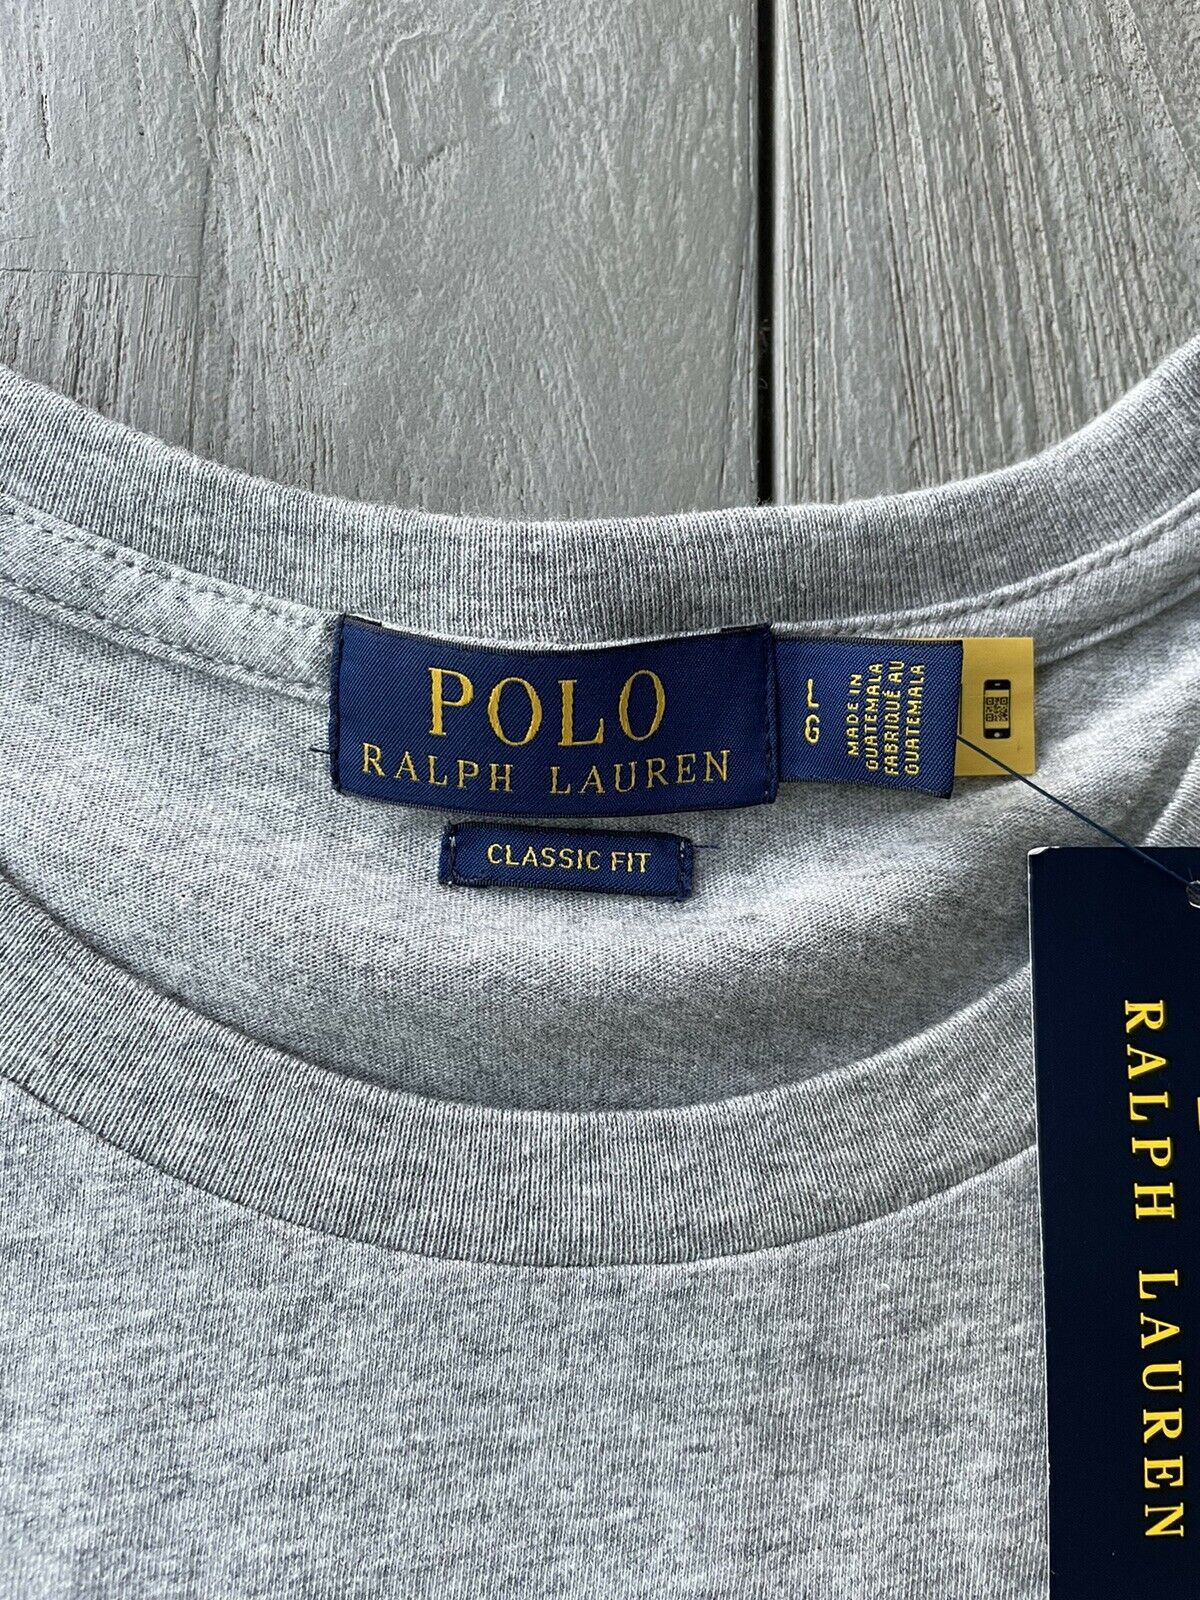 NWT Polo Ralph Lauren Men's Preppy Bear Classic Fit Tri-color T-Shirt Gray Large